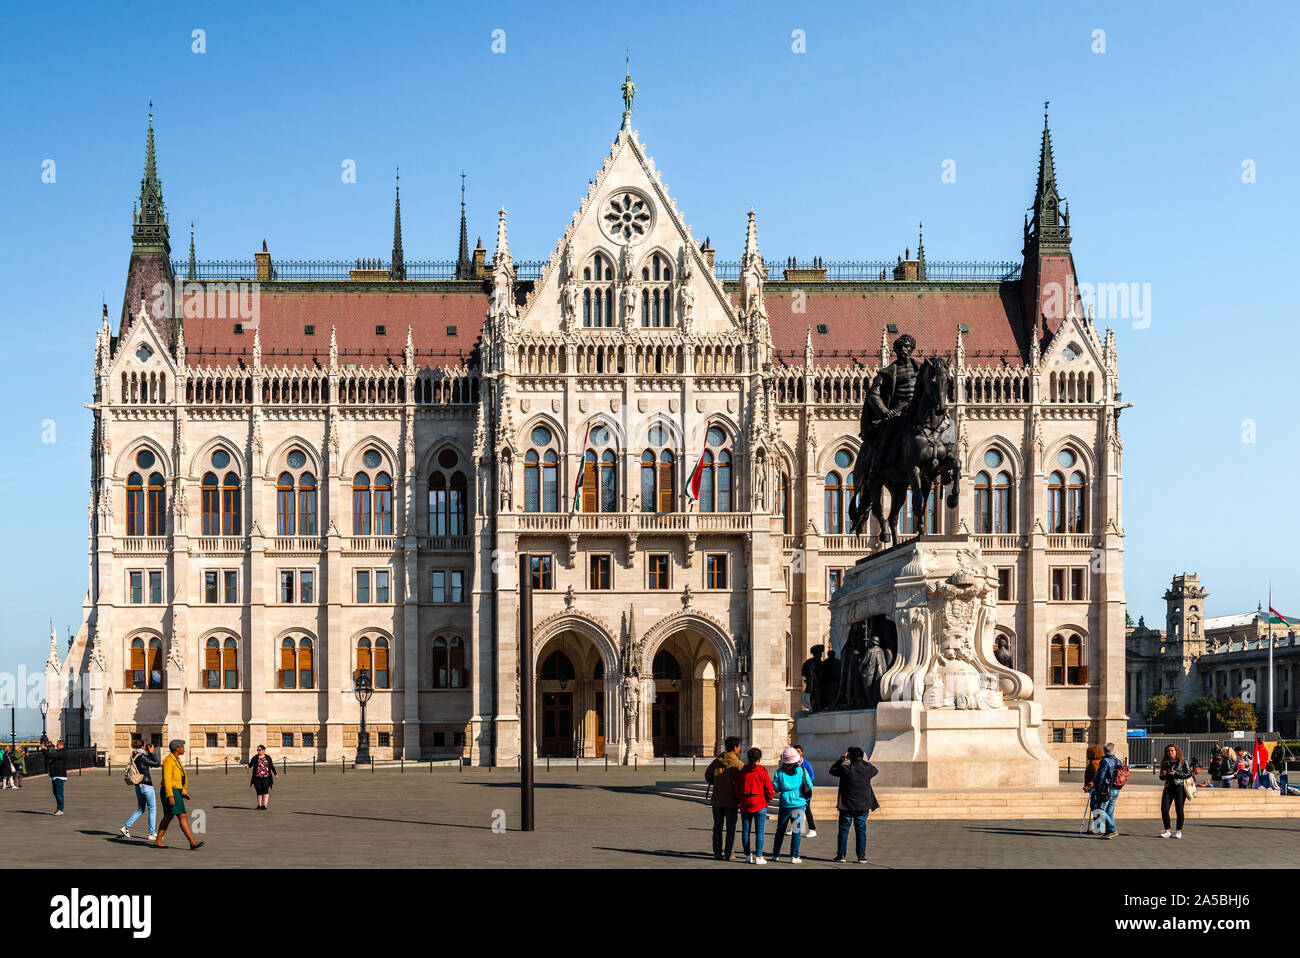 Ansicht des ungarischen Parlaments Gebäude, das auch als Parlament von Budapest, eine bemerkenswerte Sehenswürdigkeit von Ungarn und ein beliebtes touristisches Ziel bekannt. Stockfoto